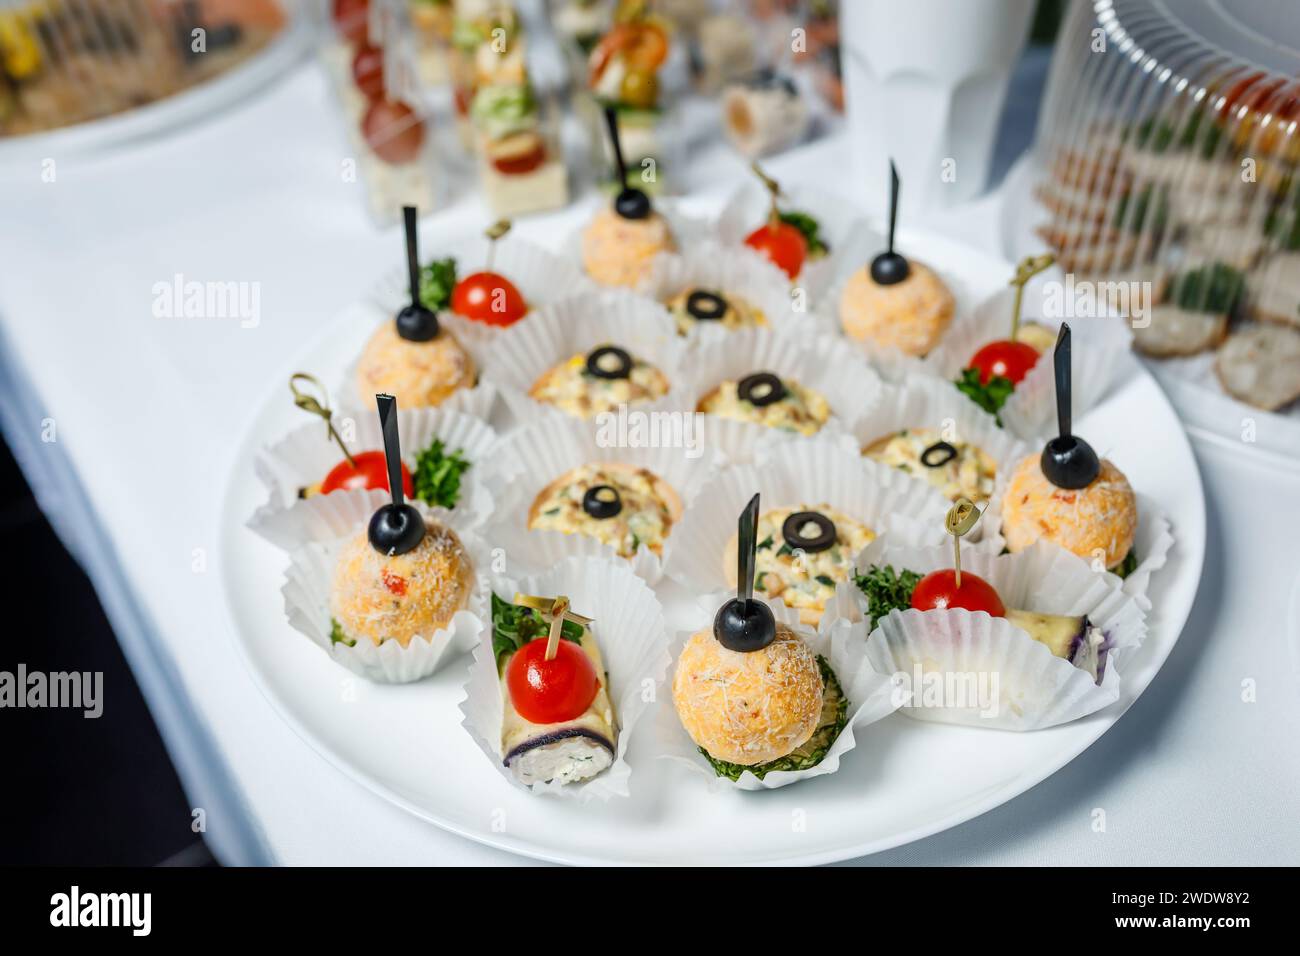 table de buffet avec toasts, snacks et desserts. Photo de haute qualité Banque D'Images